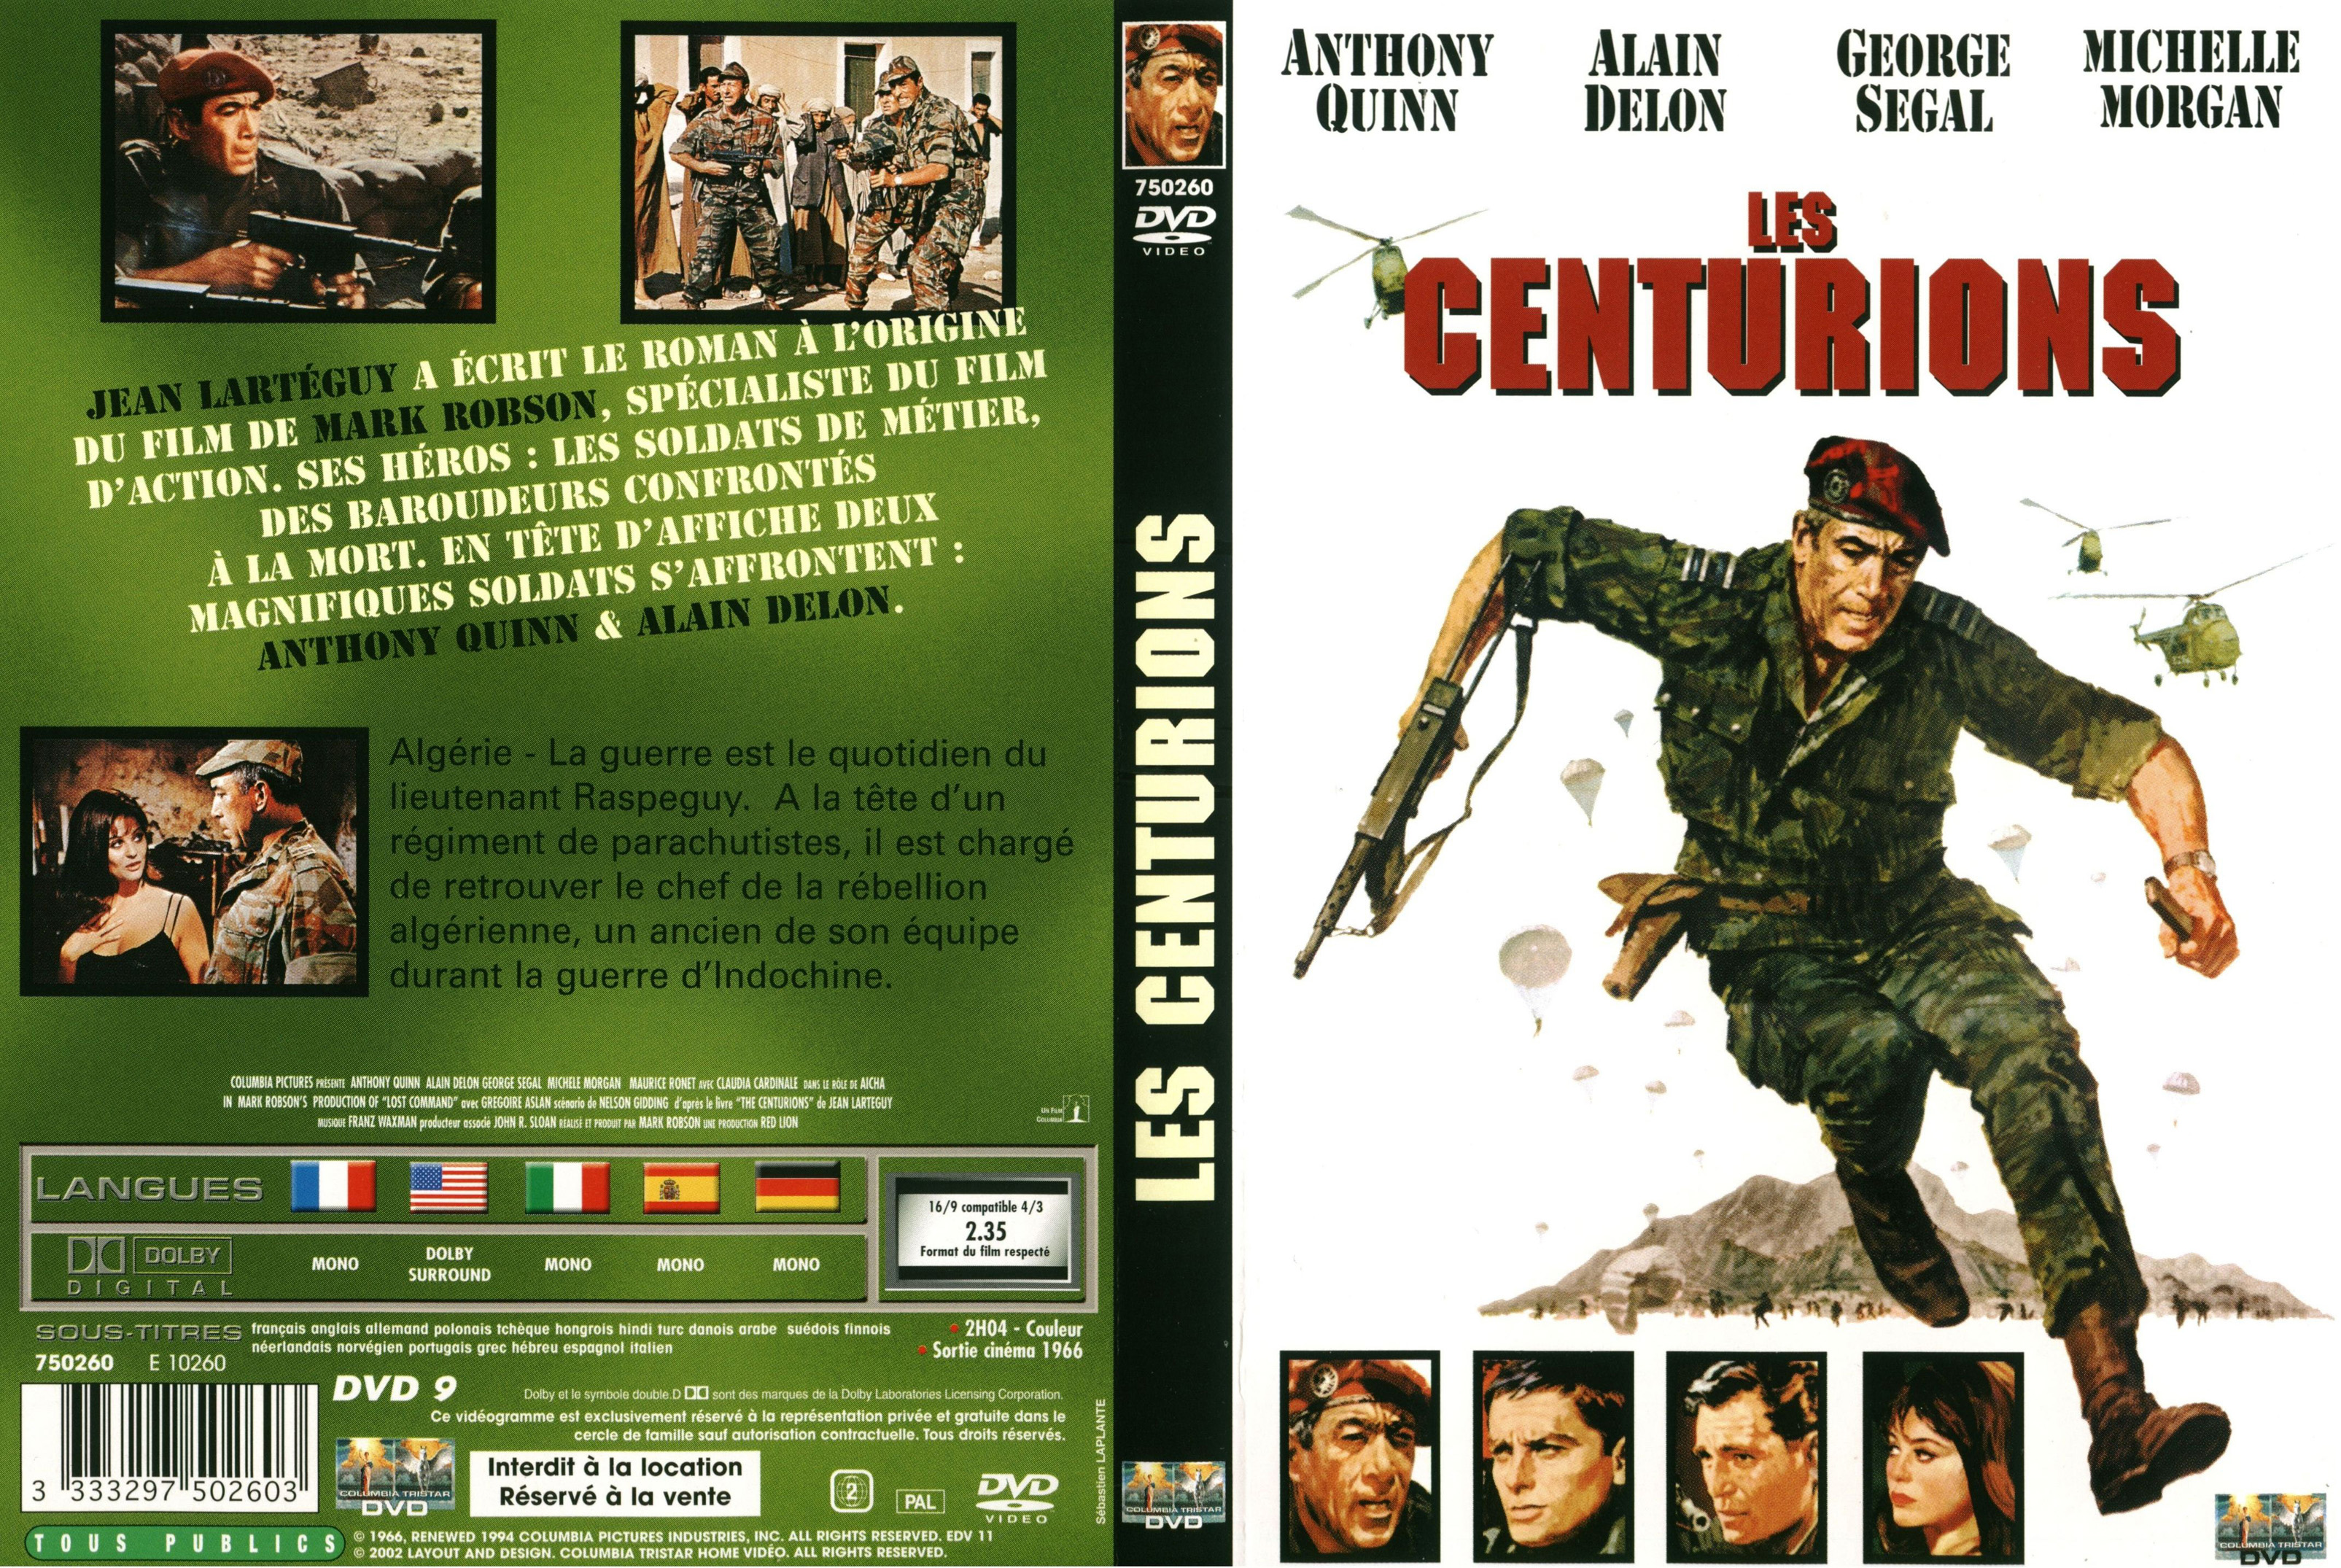 Jaquette DVD Les centurions v2